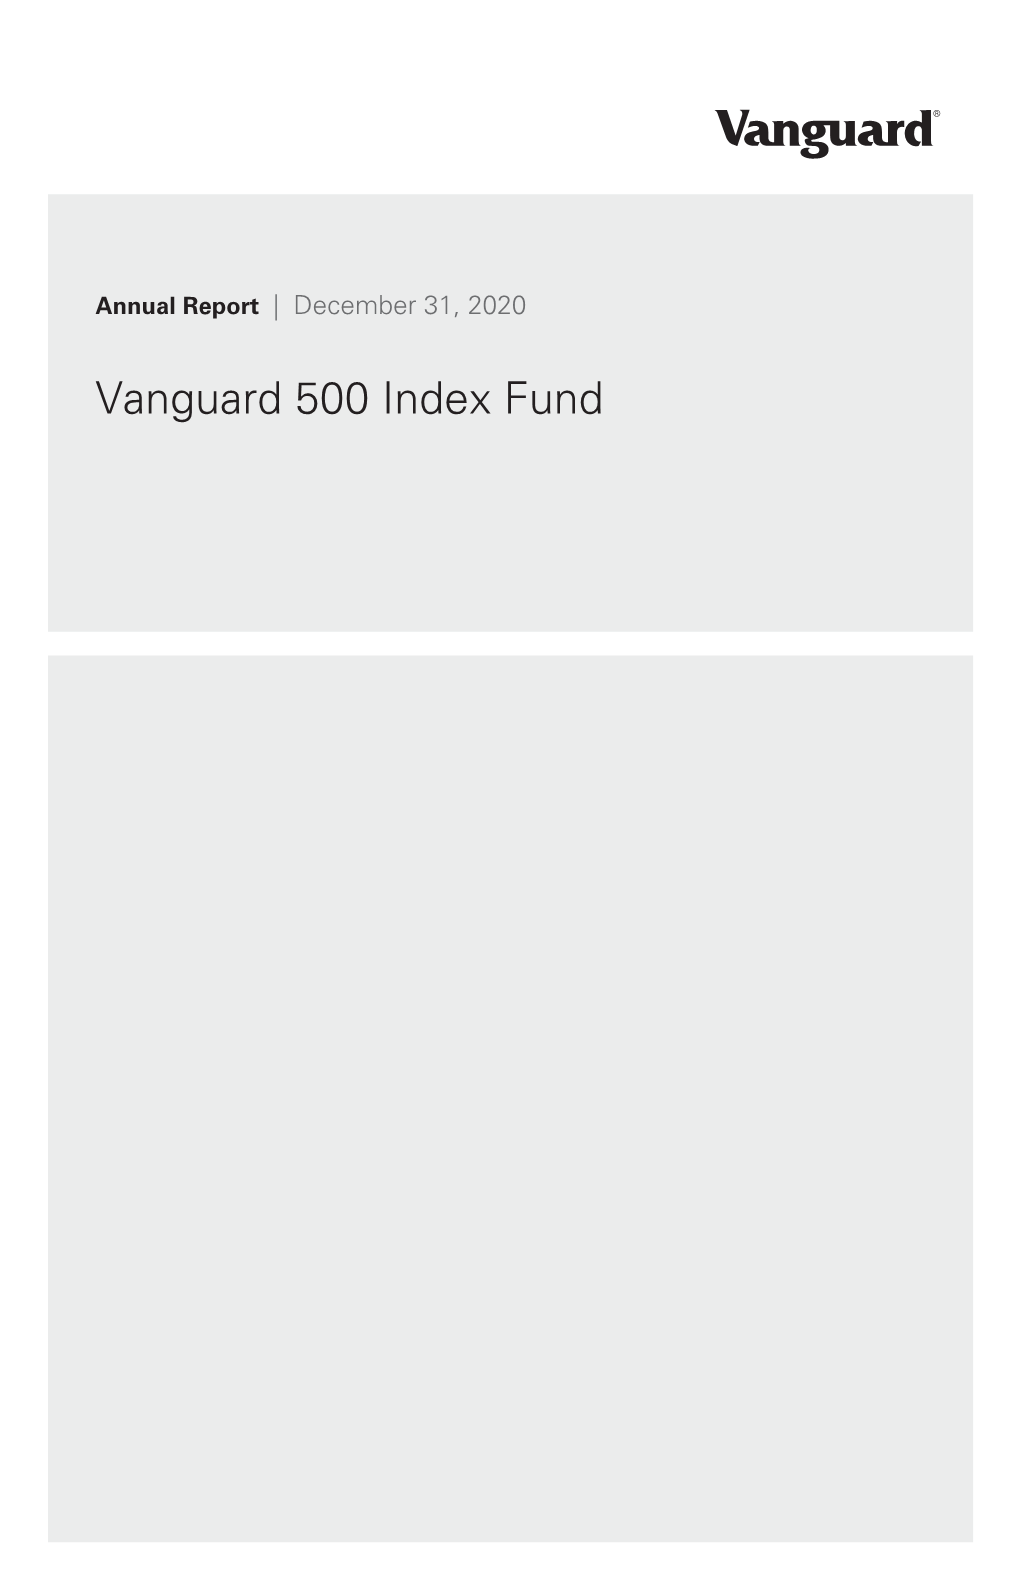 Annual Report Vanguard 500 Index Fund